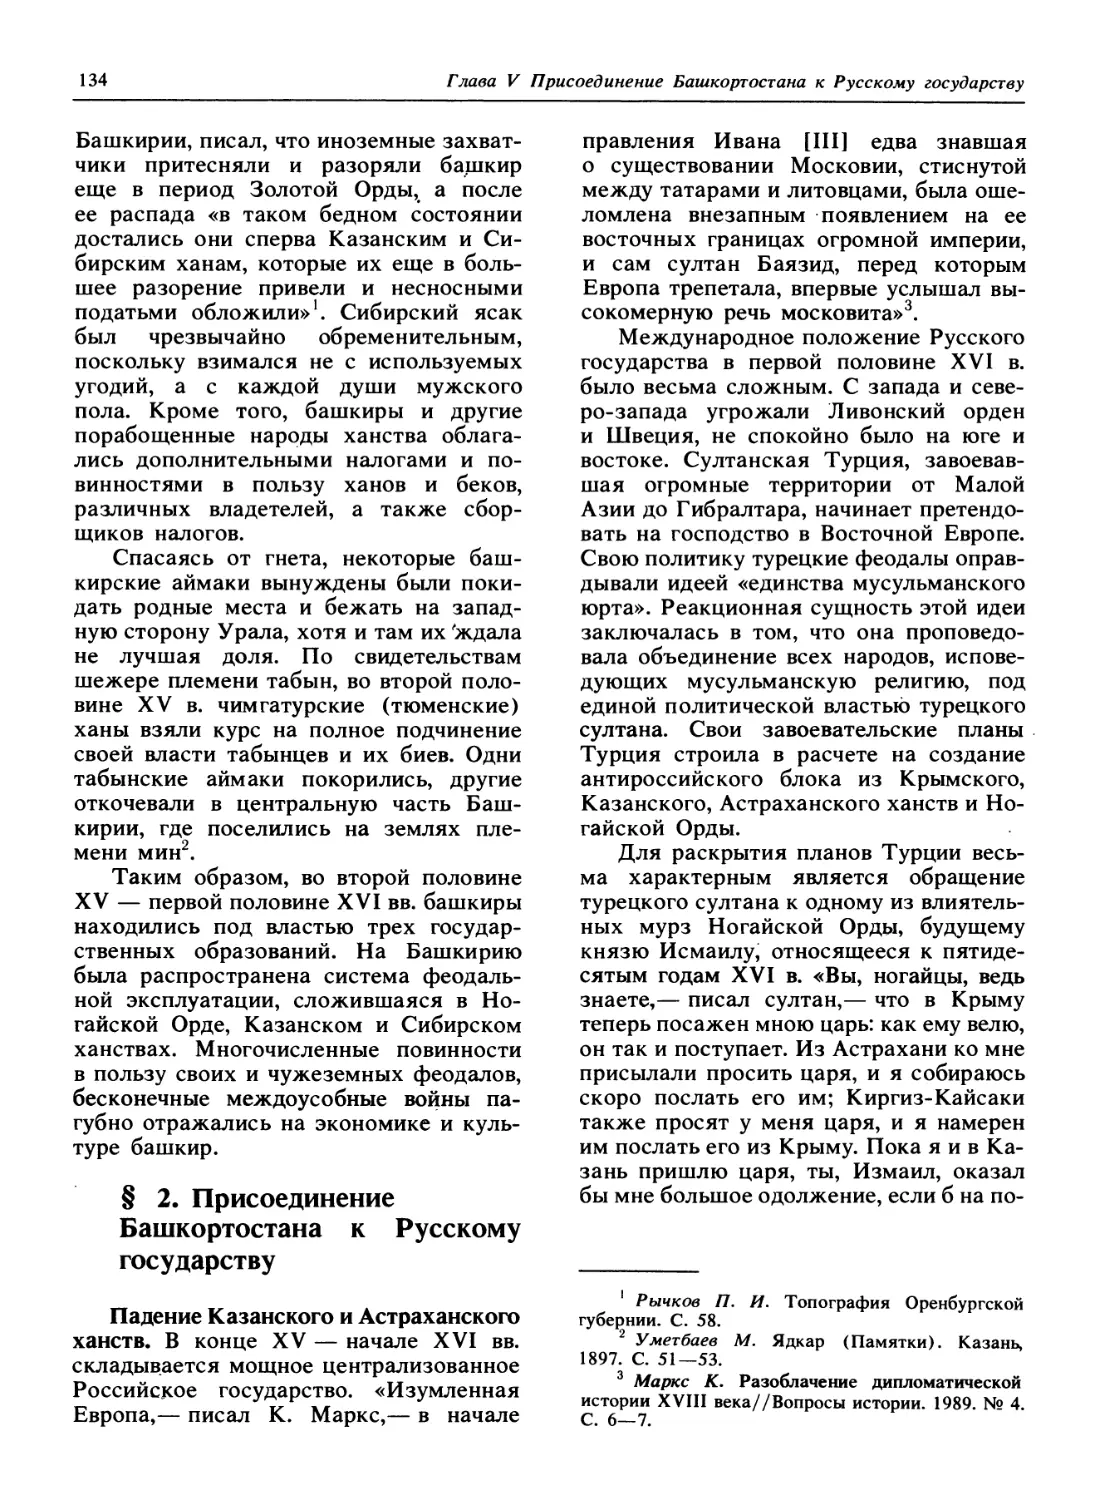 § 2. Присоединение Башкортостана к Русскому государству